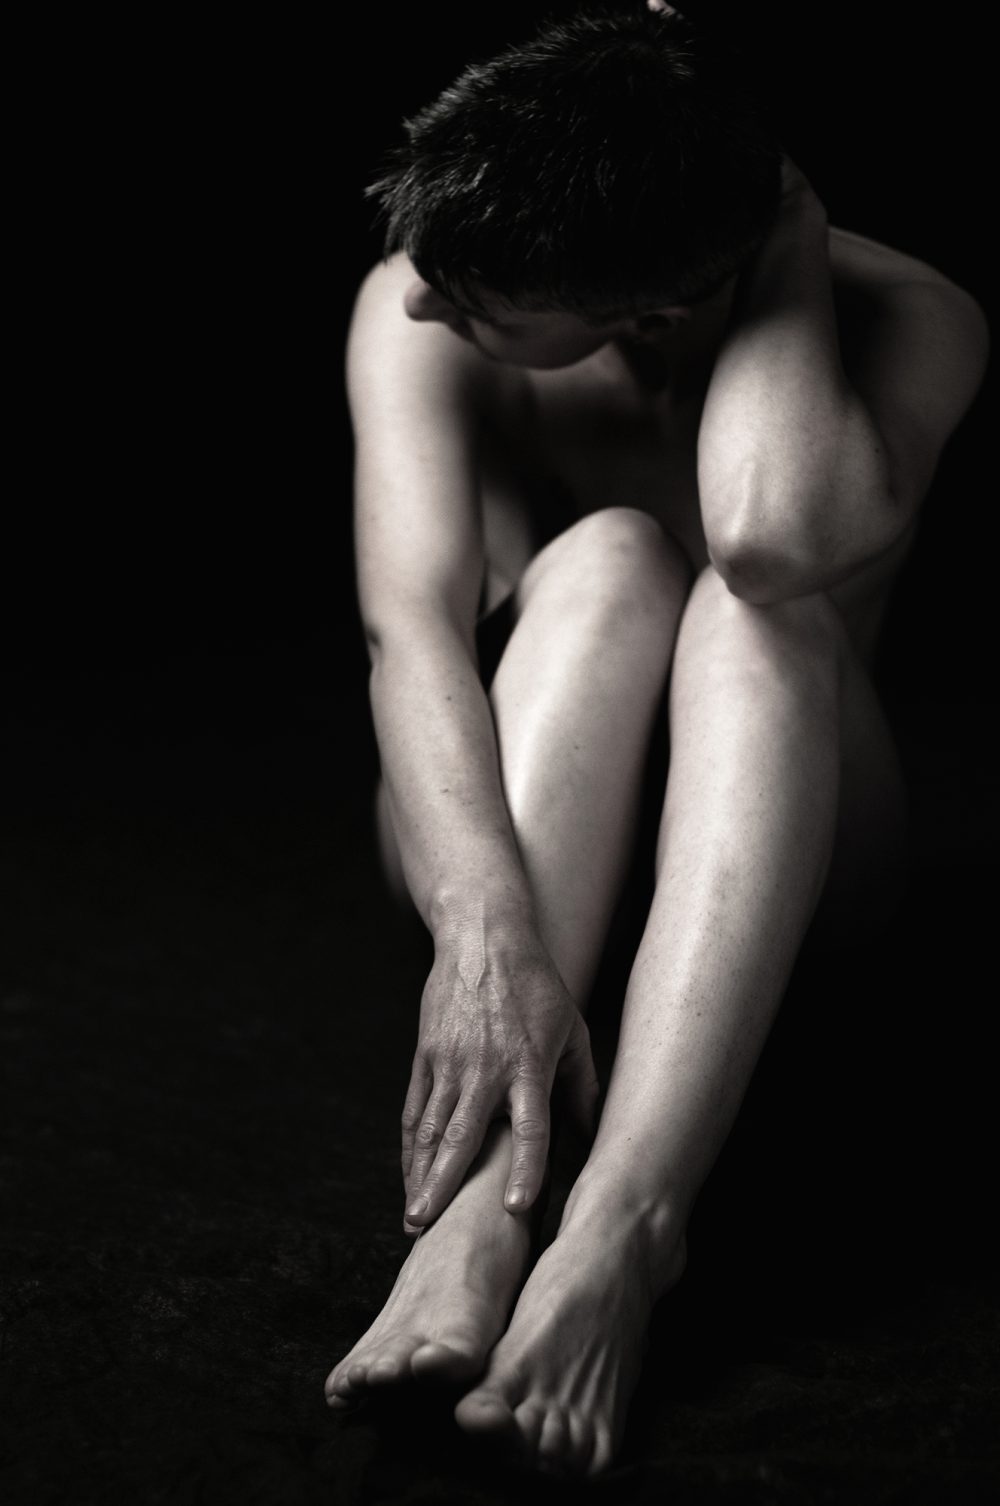 Jambes nues d'une femme / Photographie artistique du nu féminin en noir et blanc